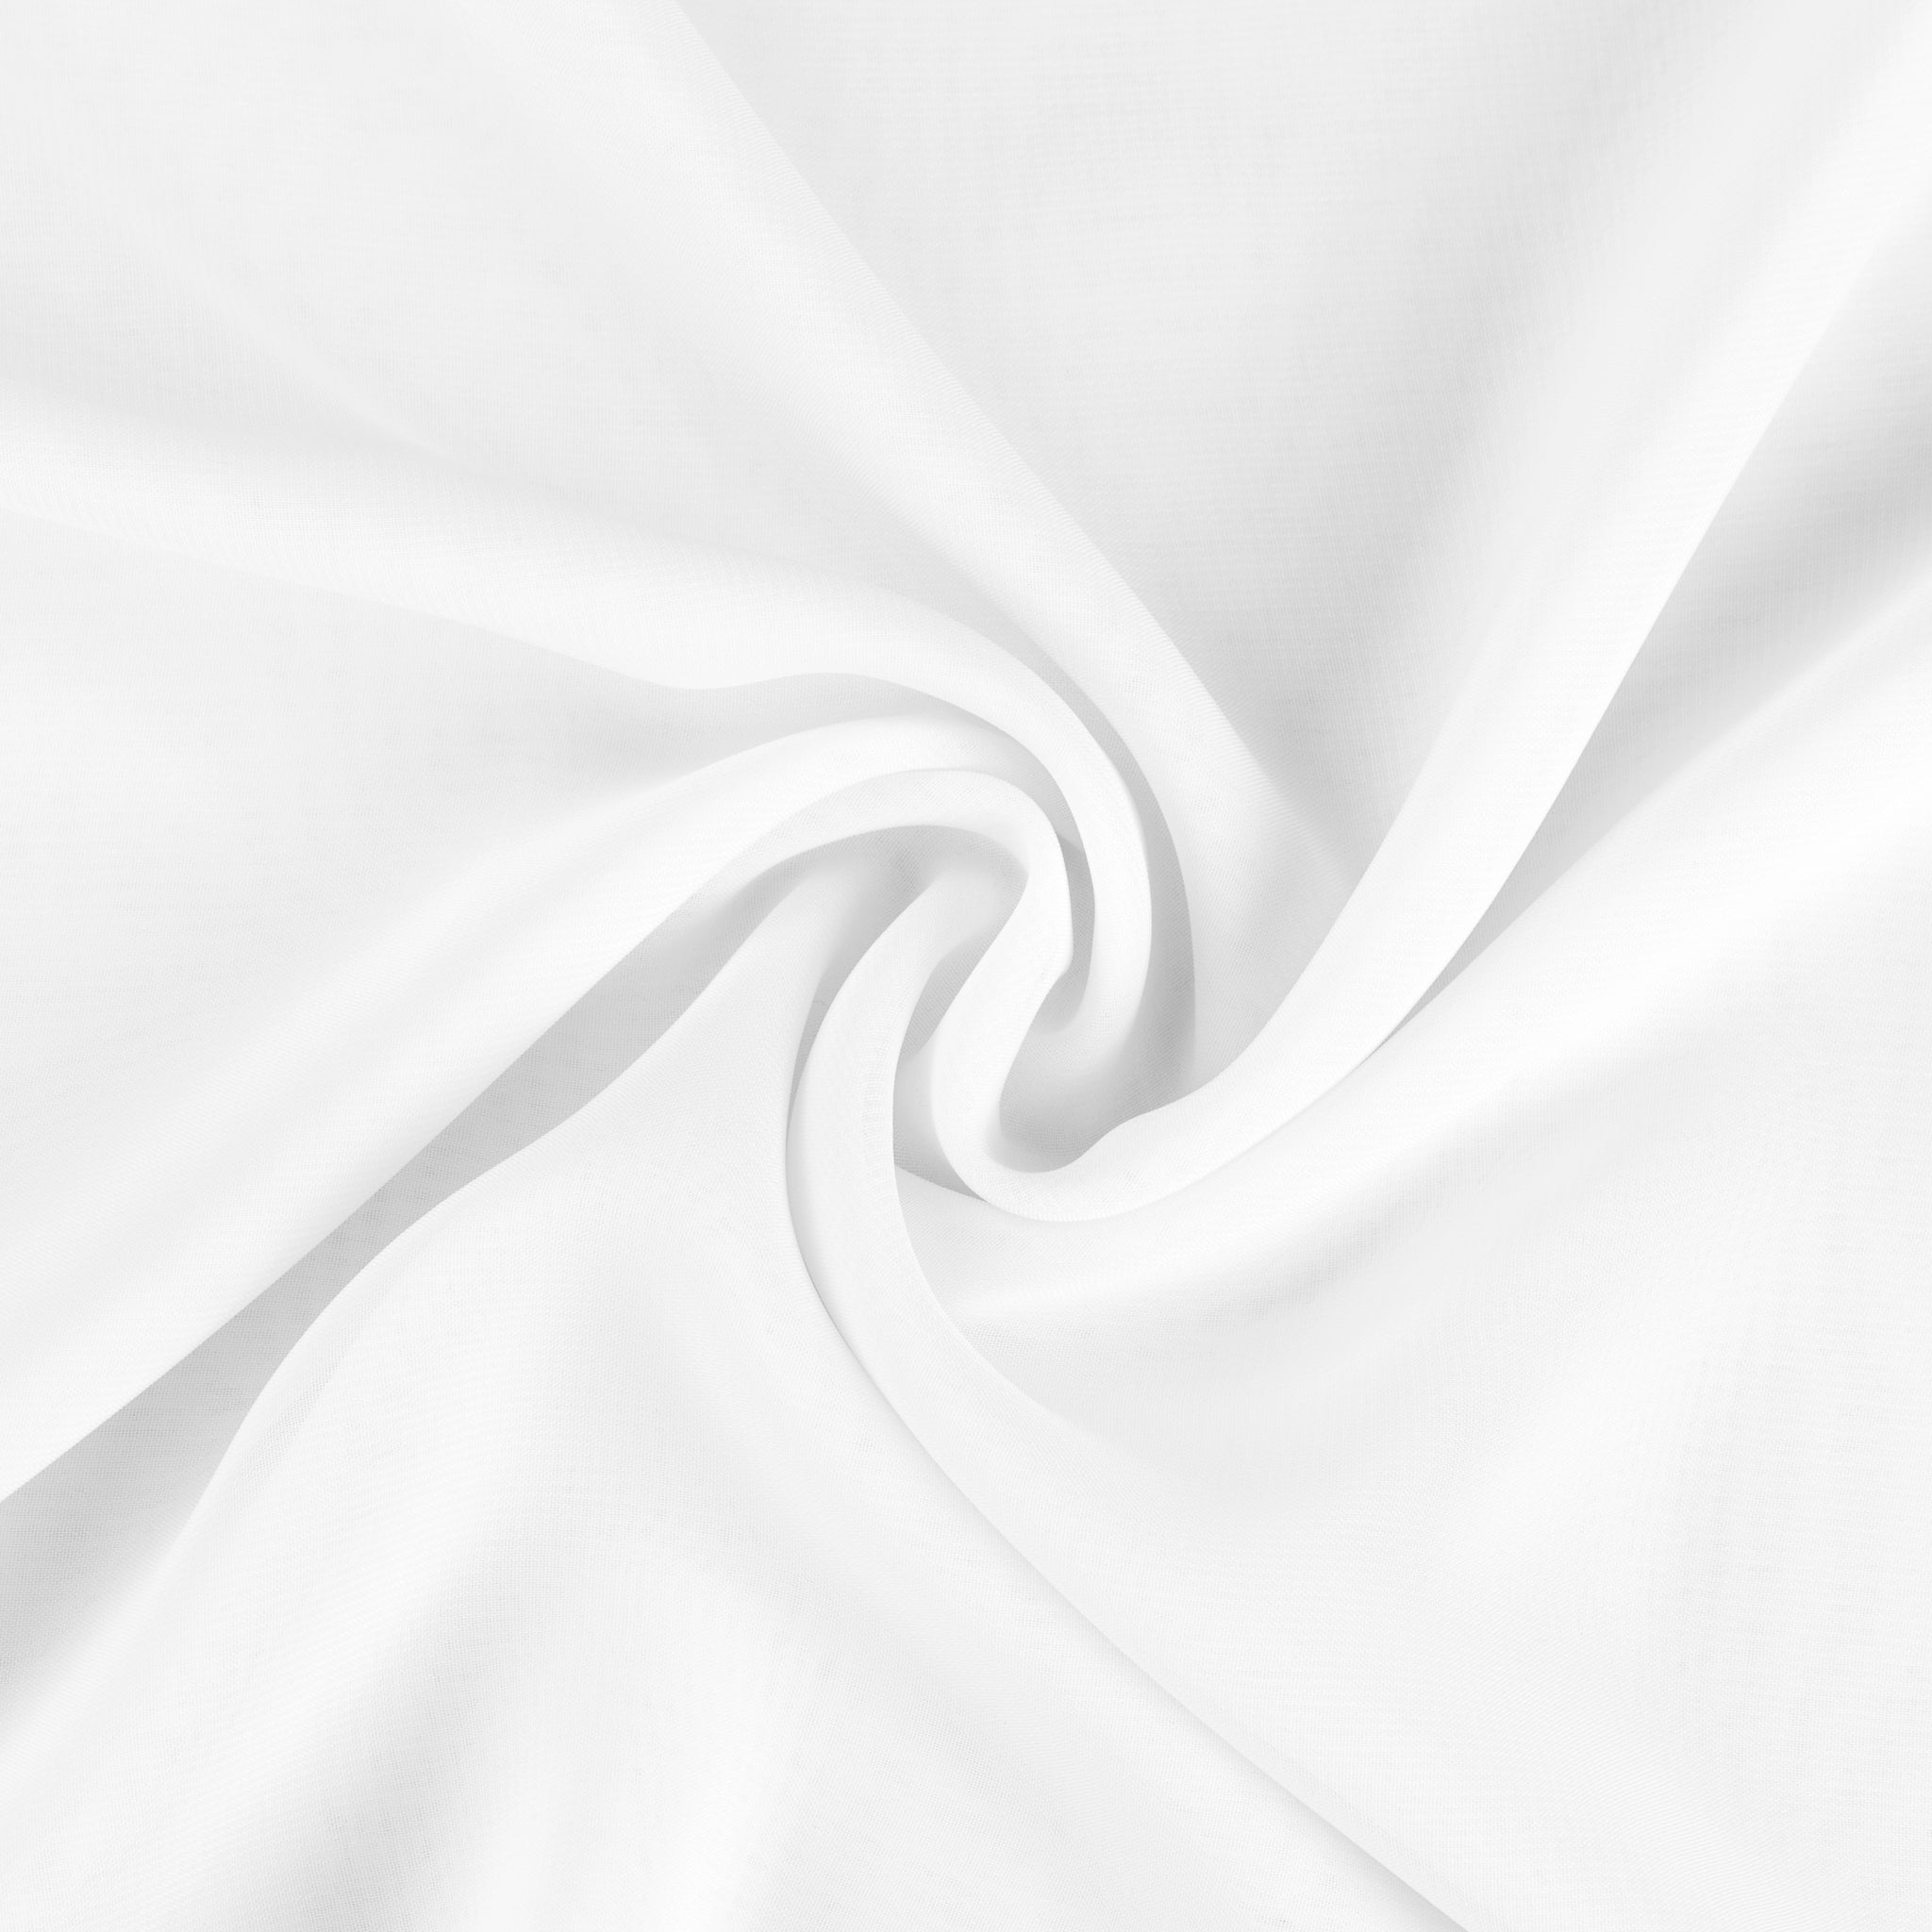 White Chiffon Fabric / 50 Yards Roll